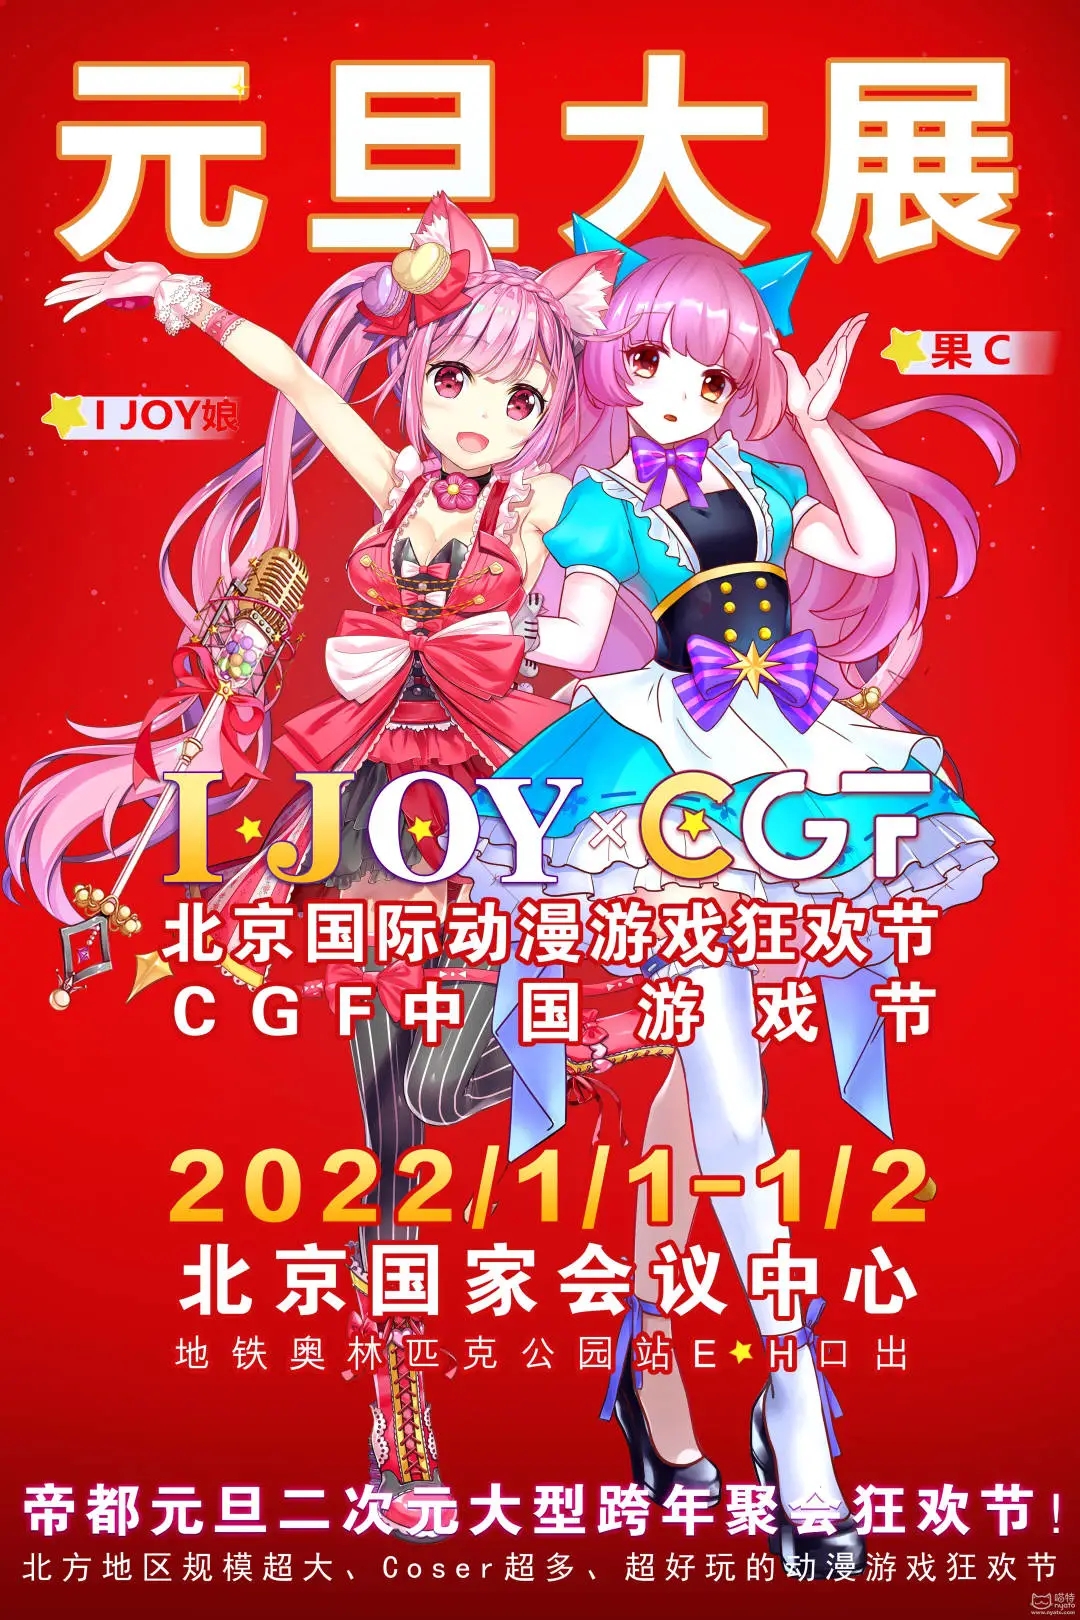 IJOY漫展×CGF中国游戏节